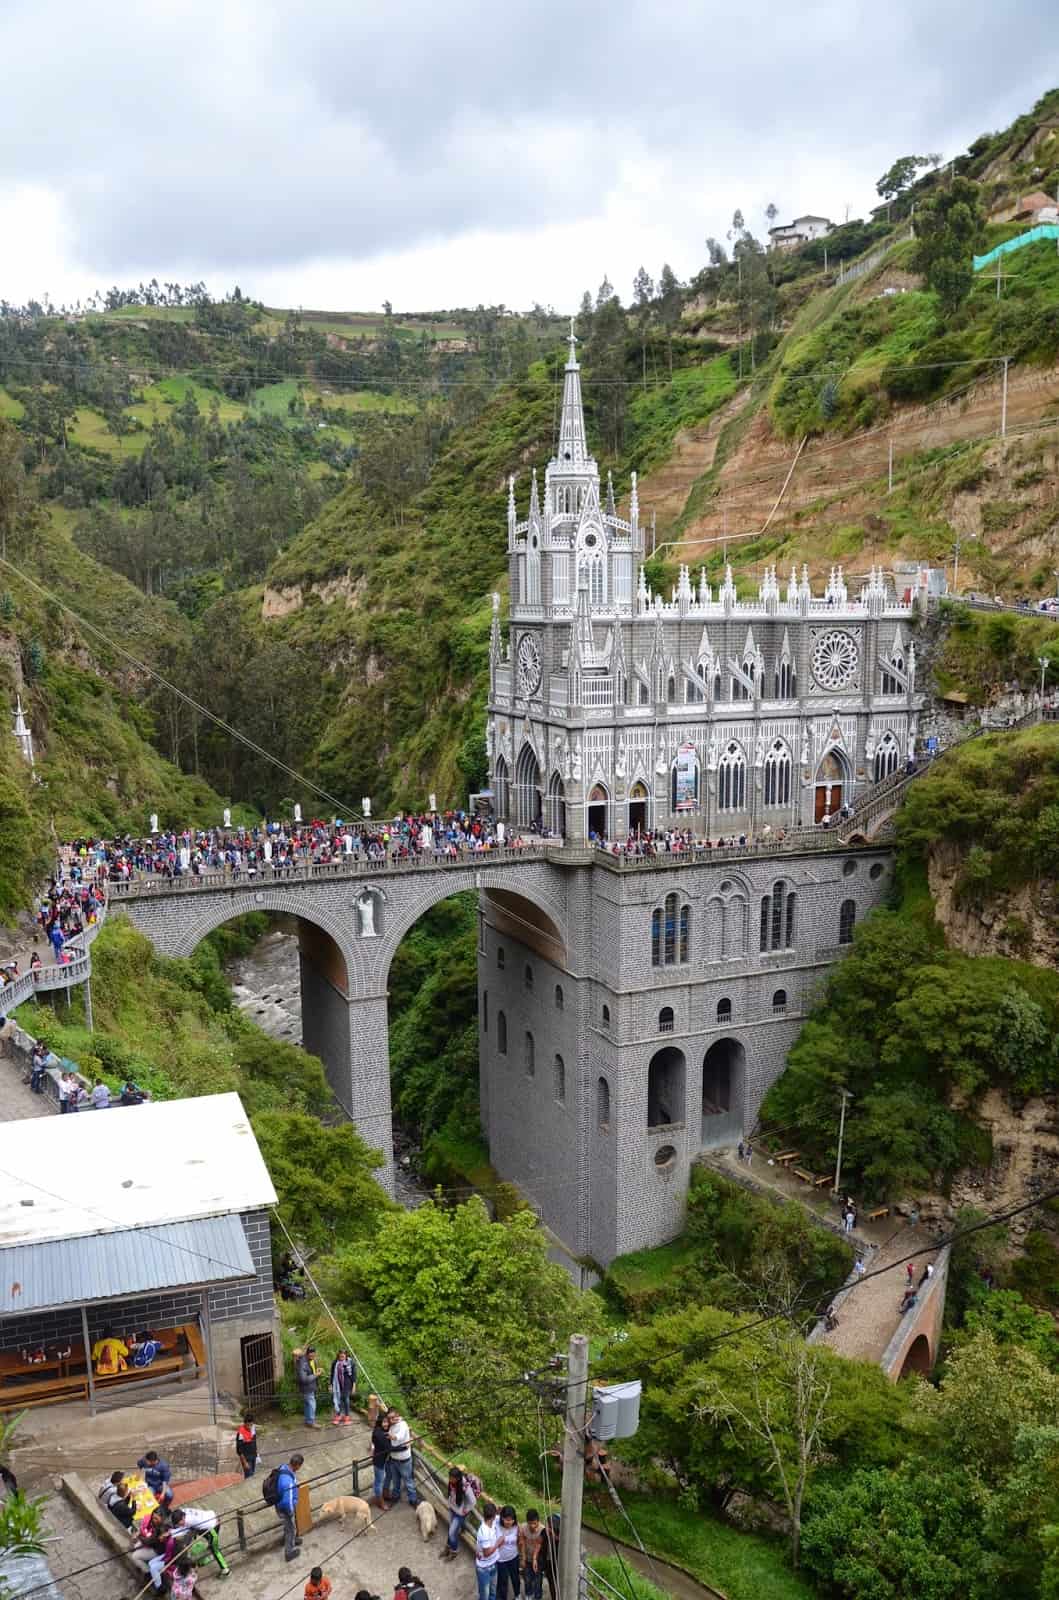 Las Lajas Sanctuary near Ipiales, Nariño, Colombia